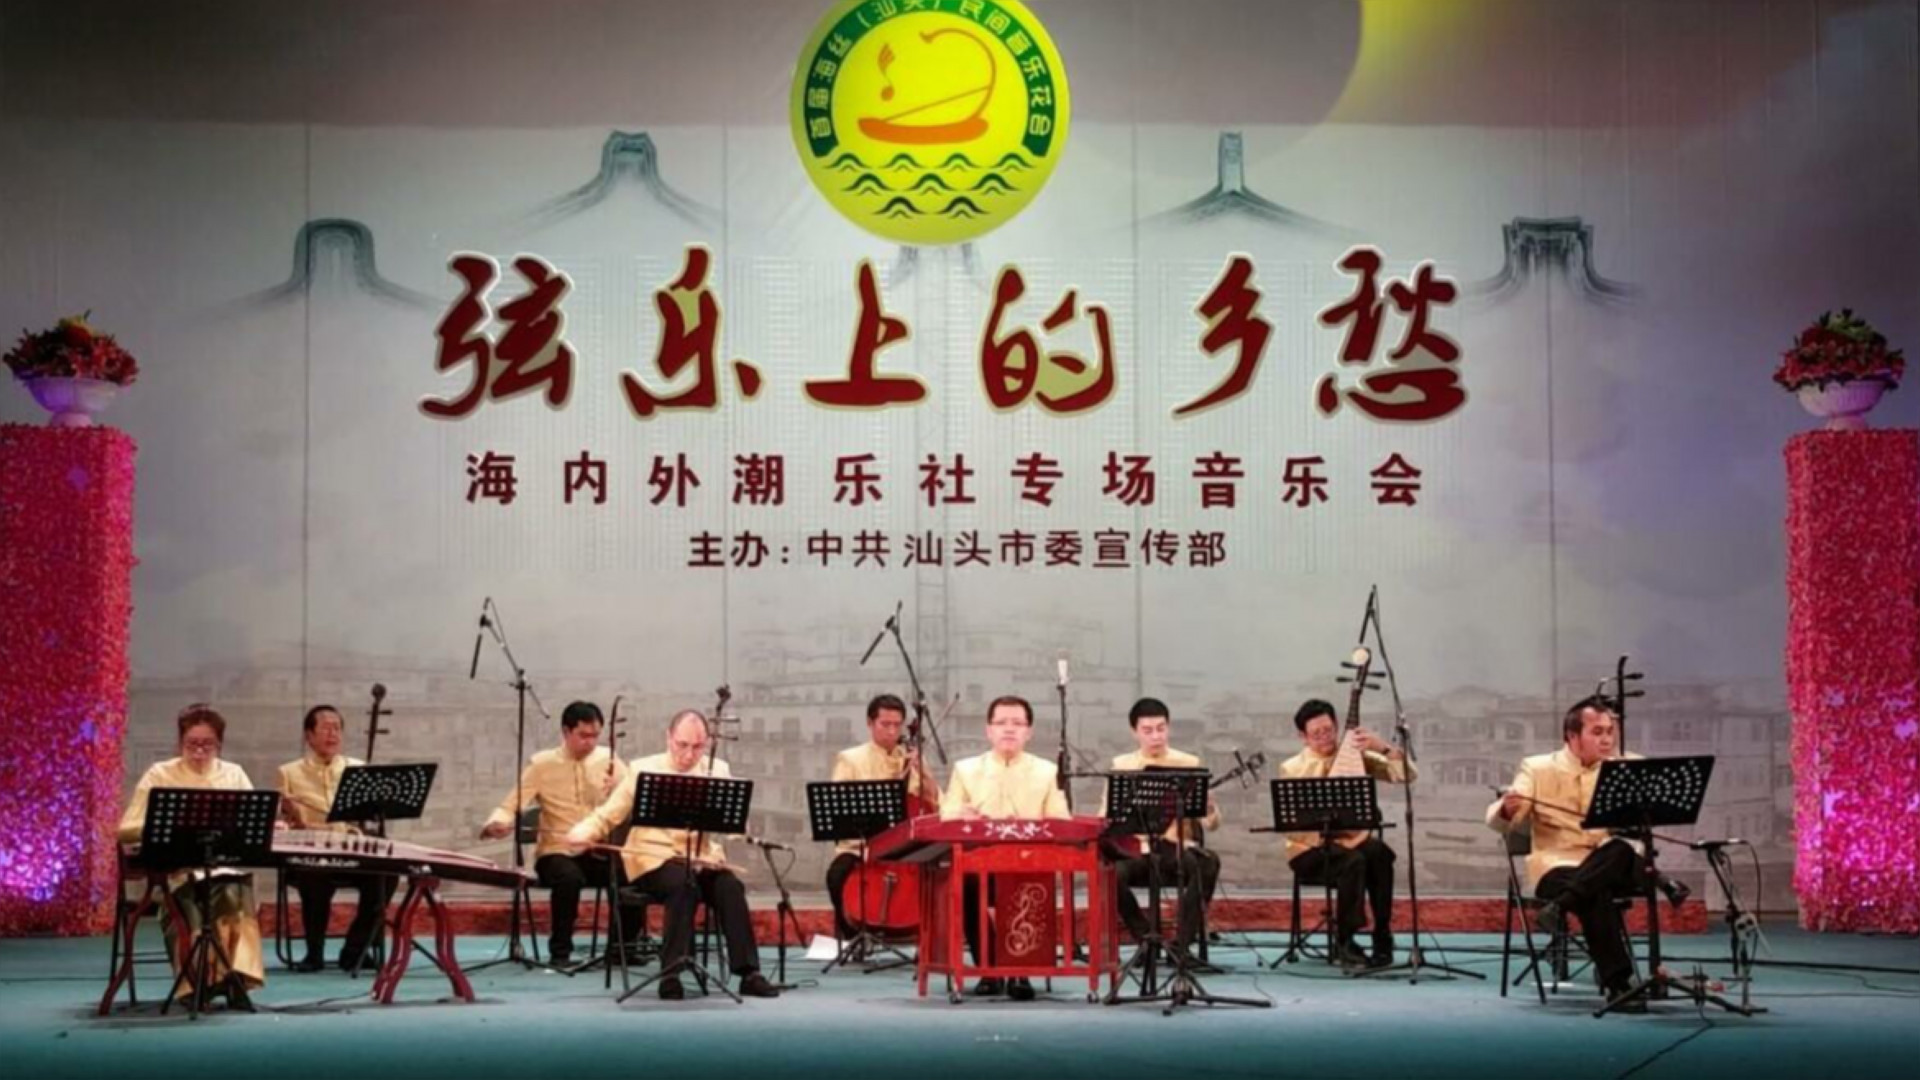 รับเชิญจากสาธารณรัฐประชาชนจีนจัดวงดนตรีไปแสดง